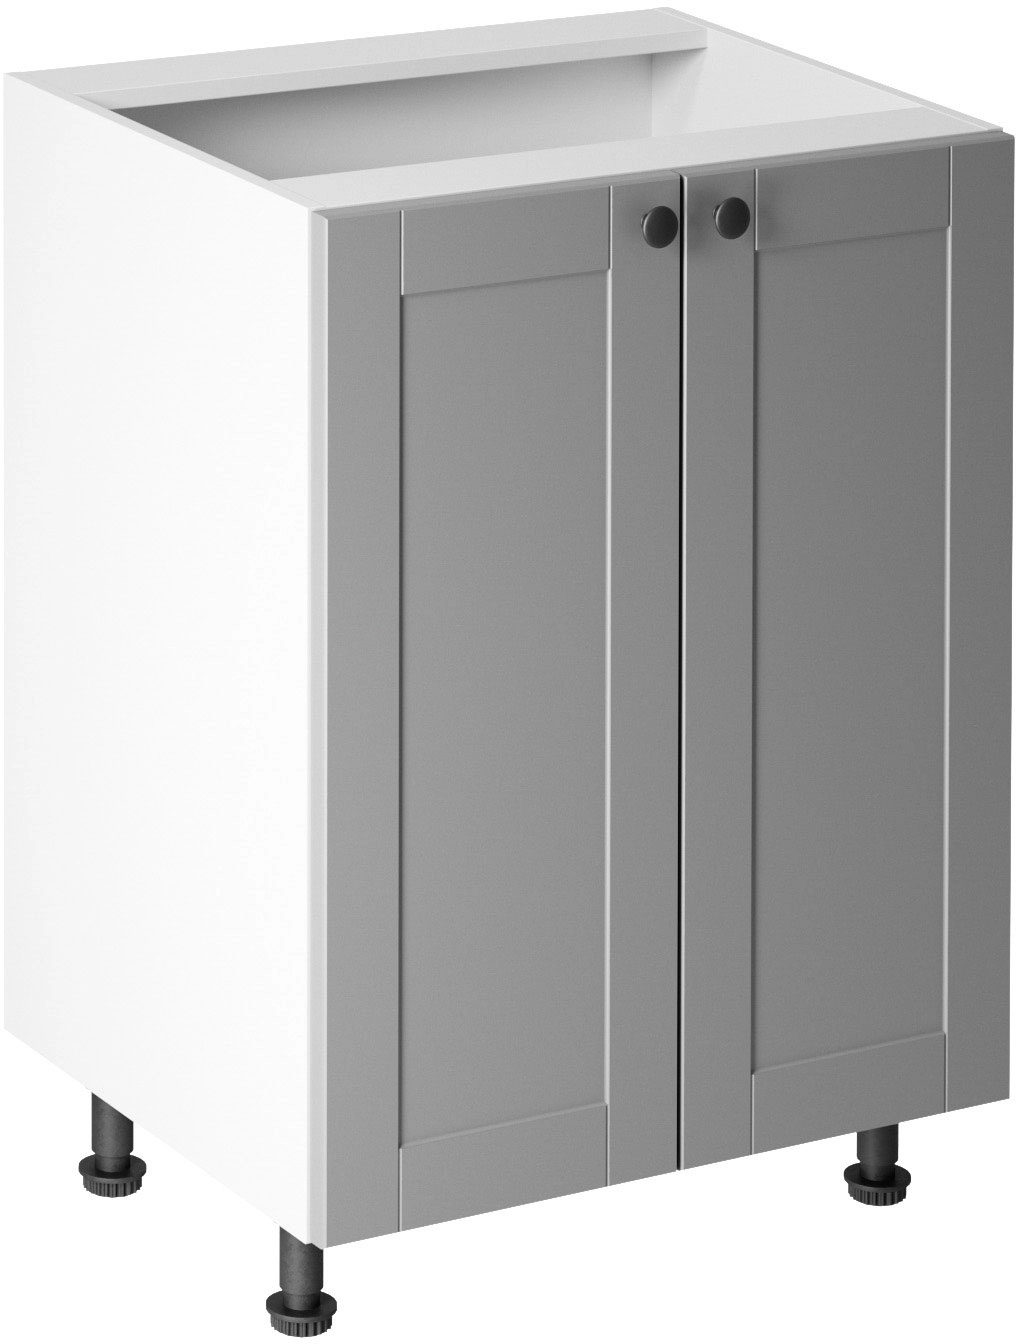 Linea Grey D60 alsó konyhaszekrény, szürke / fehér